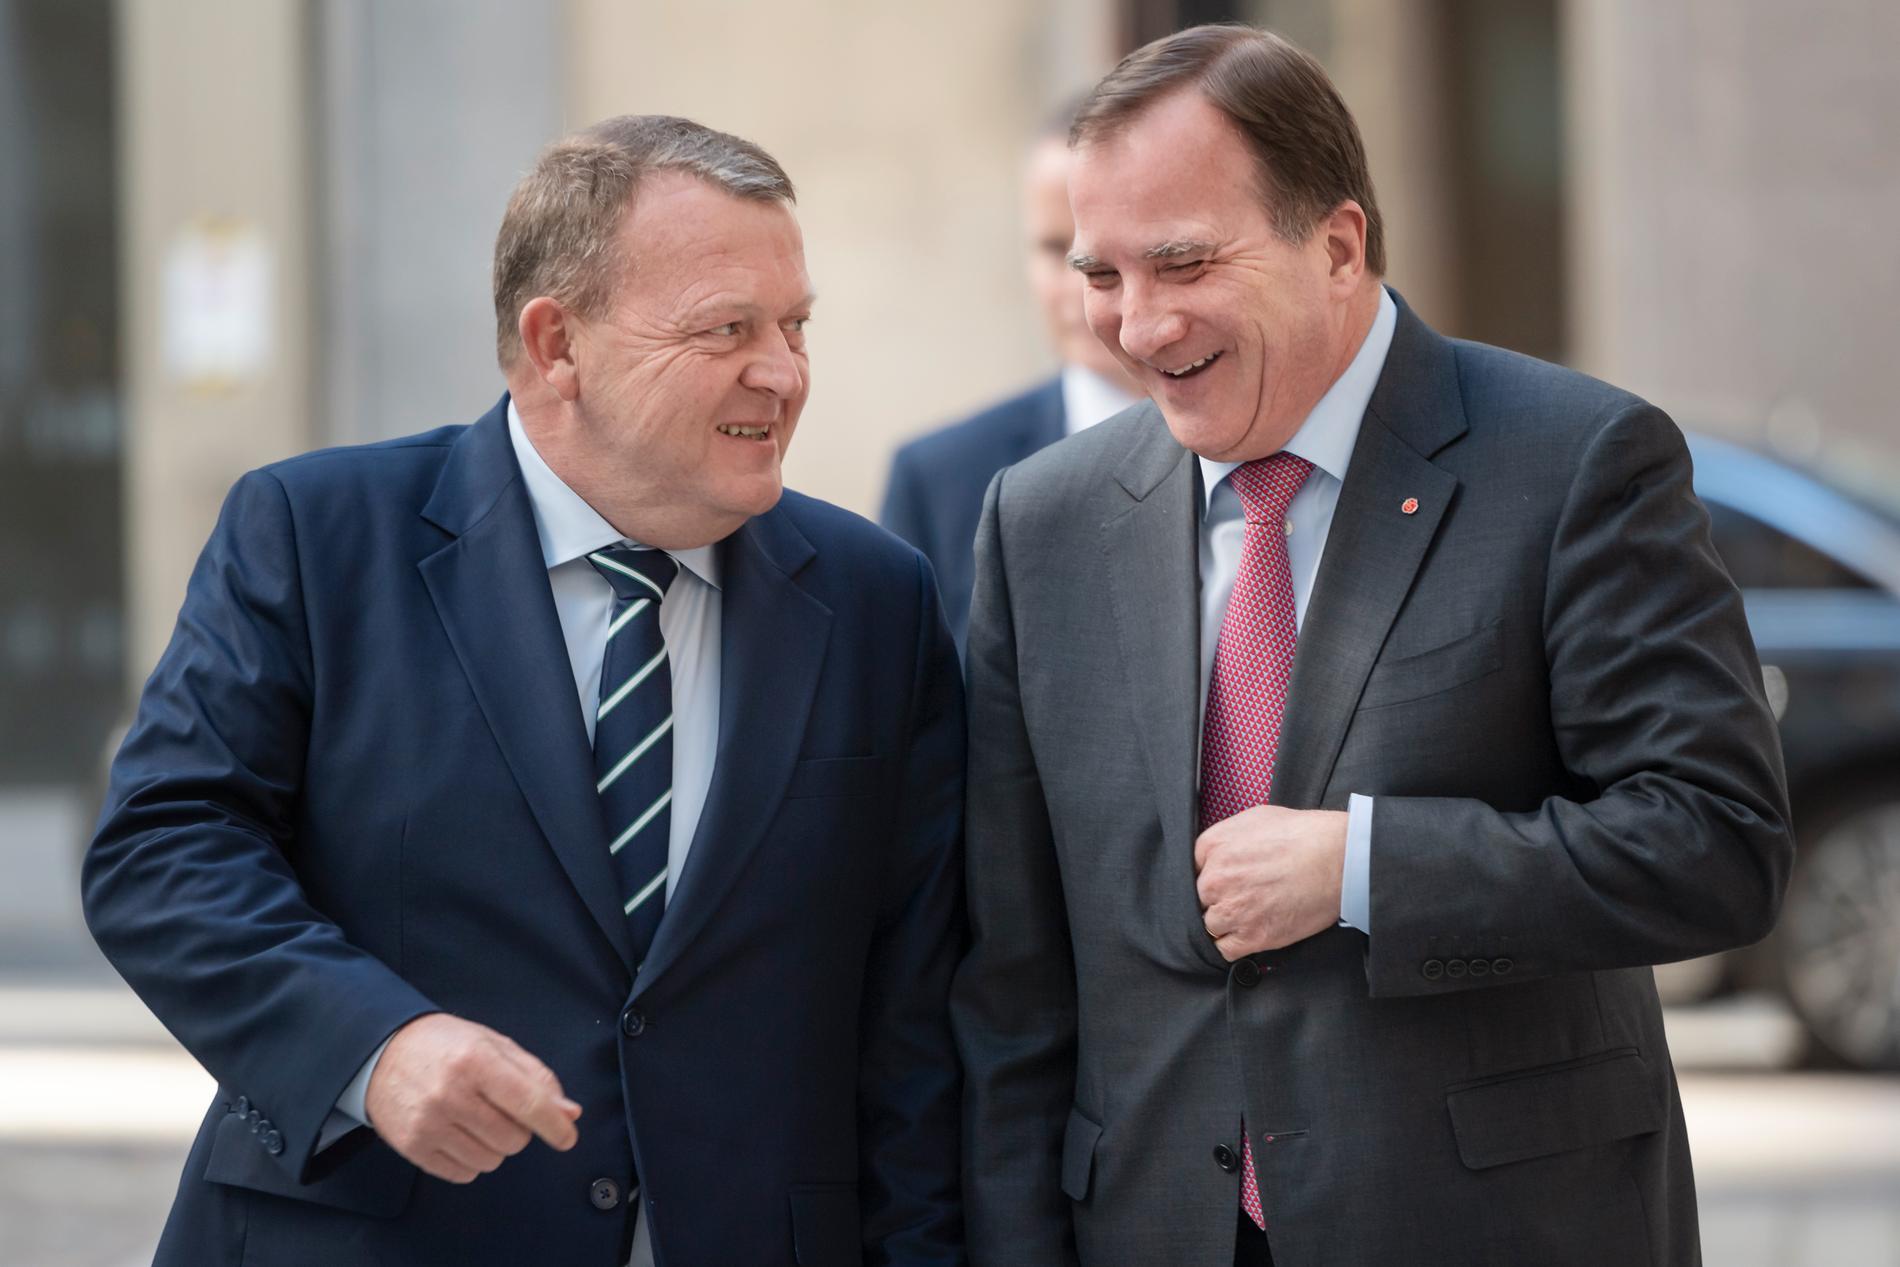 Danmarks statsminister Lars Løkke Rasmussen (Venstre) träffade sin svenske kollega Stefan Löfven (S) i Stockholm på onsdagen.